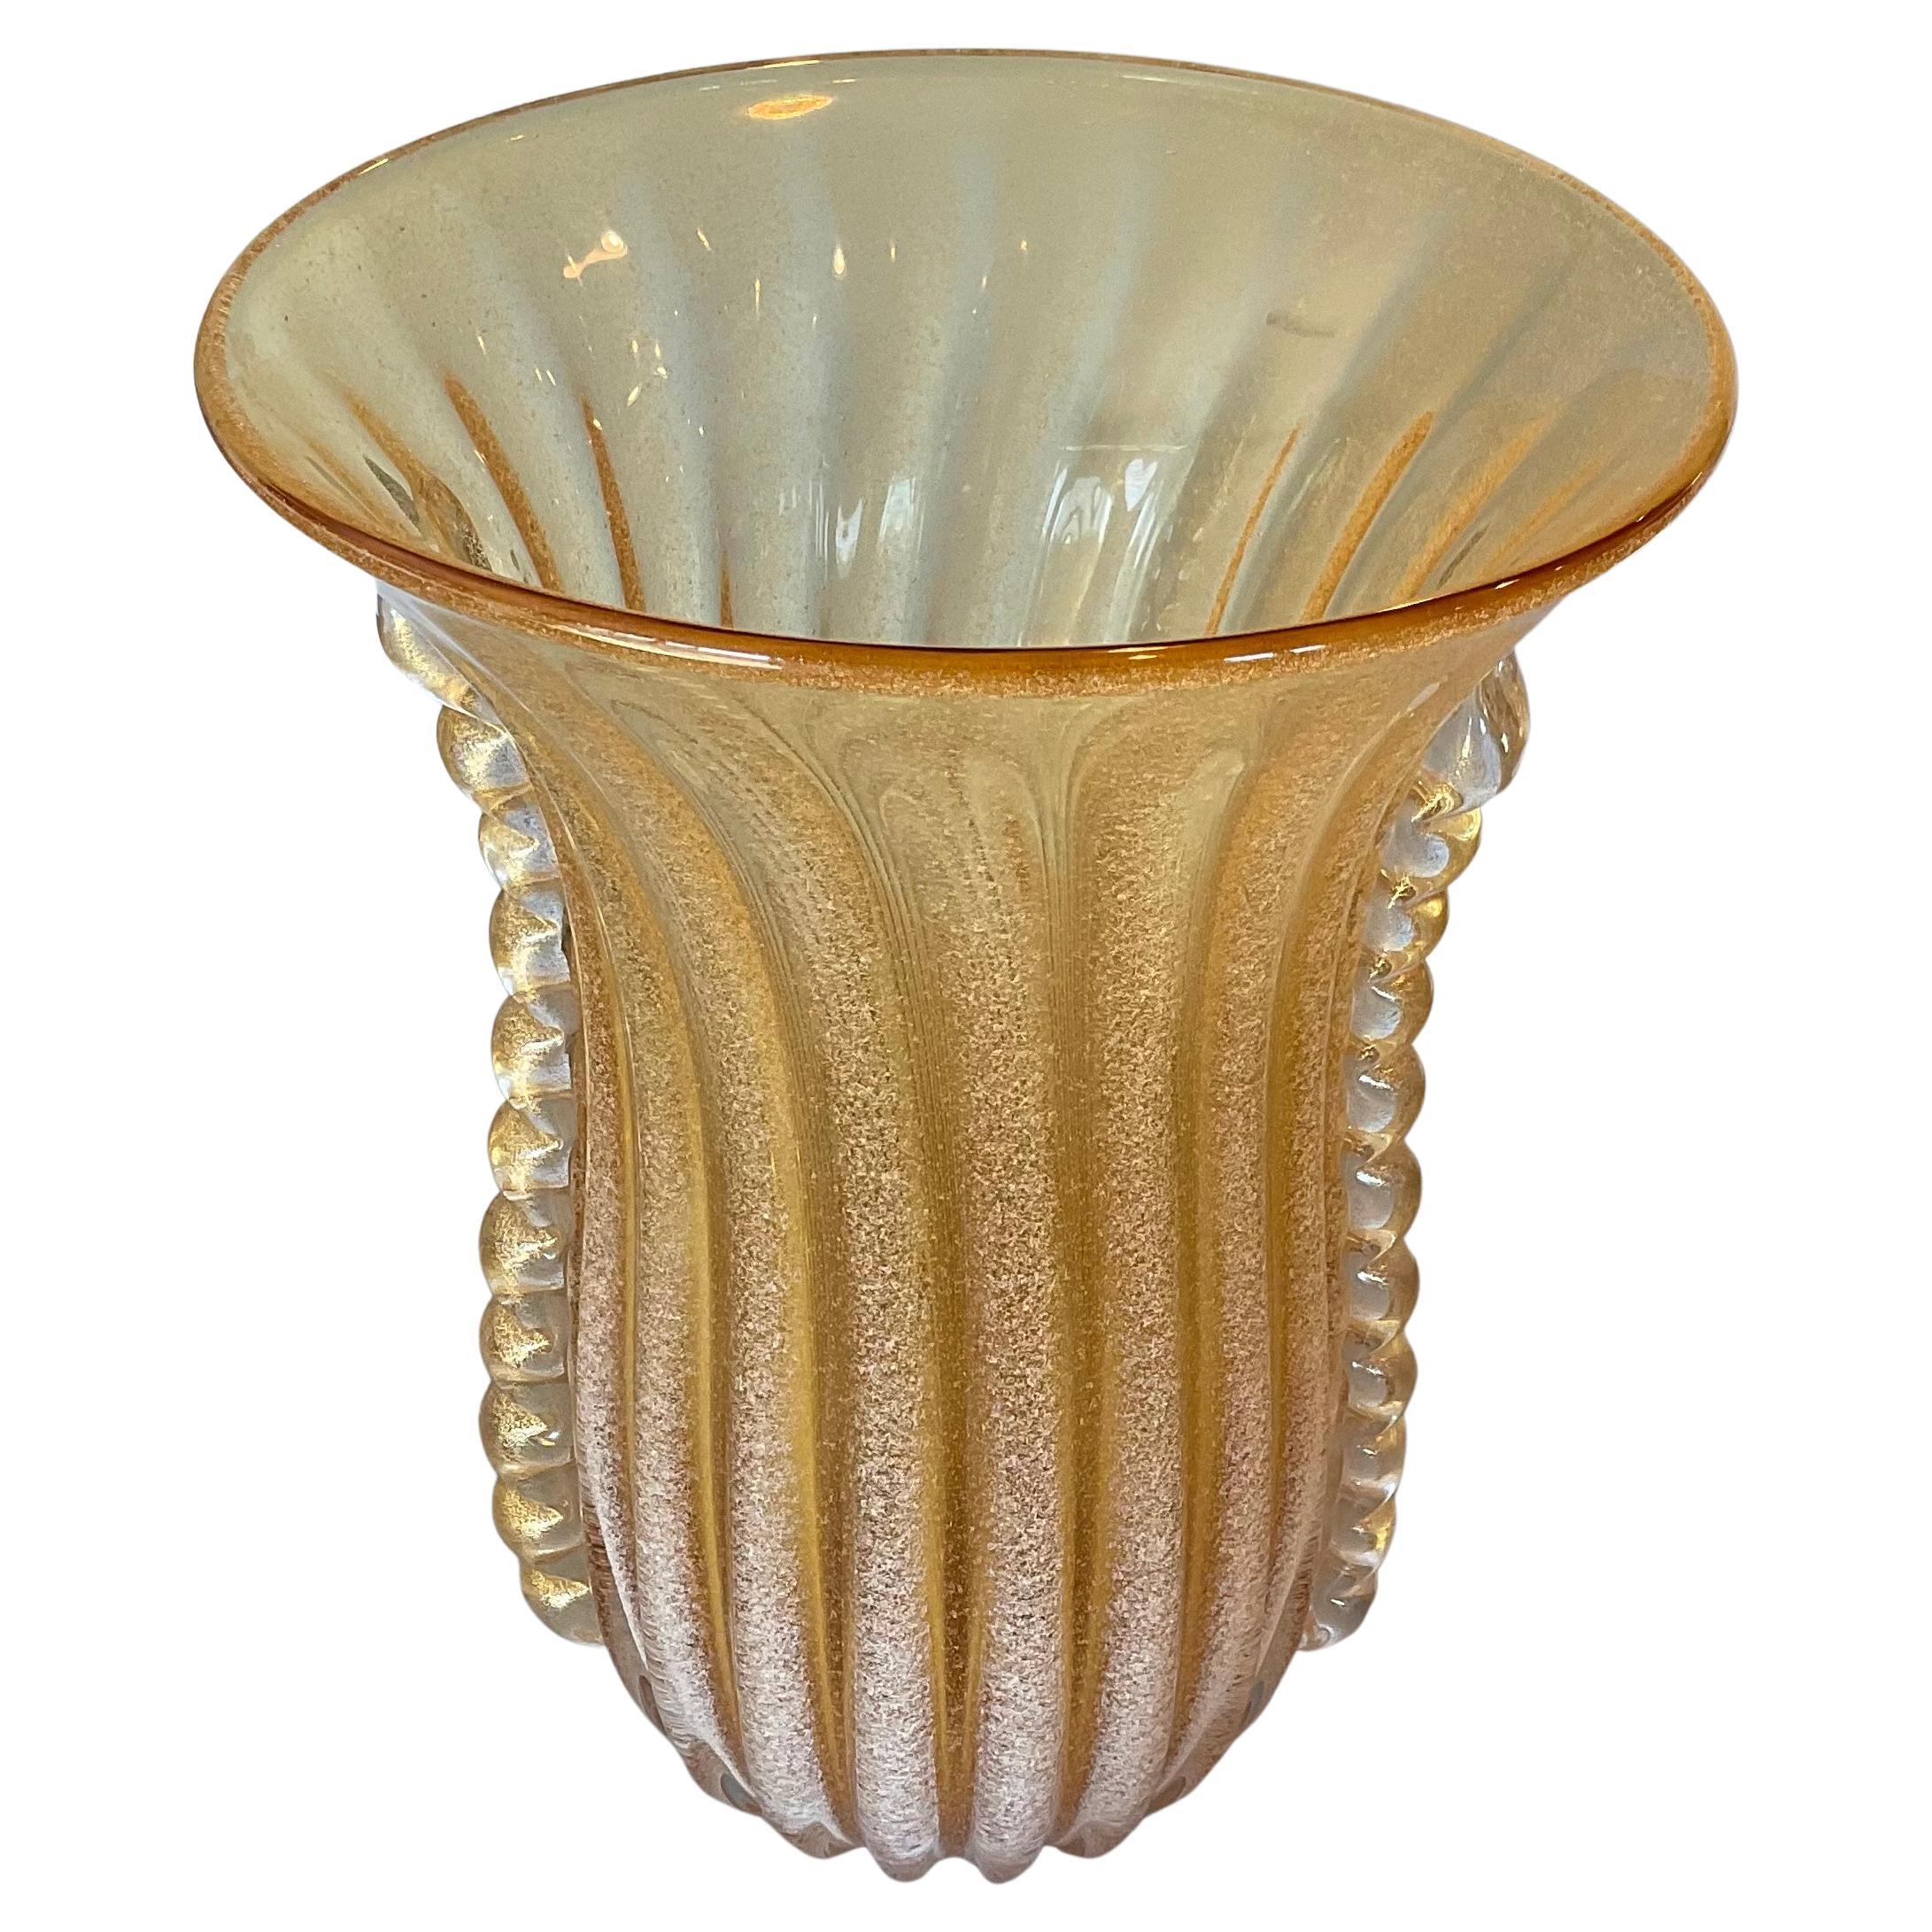 Grand vase en verre d'art de Murano en verre Pulegoso doré avec poignées appliquées dorées 